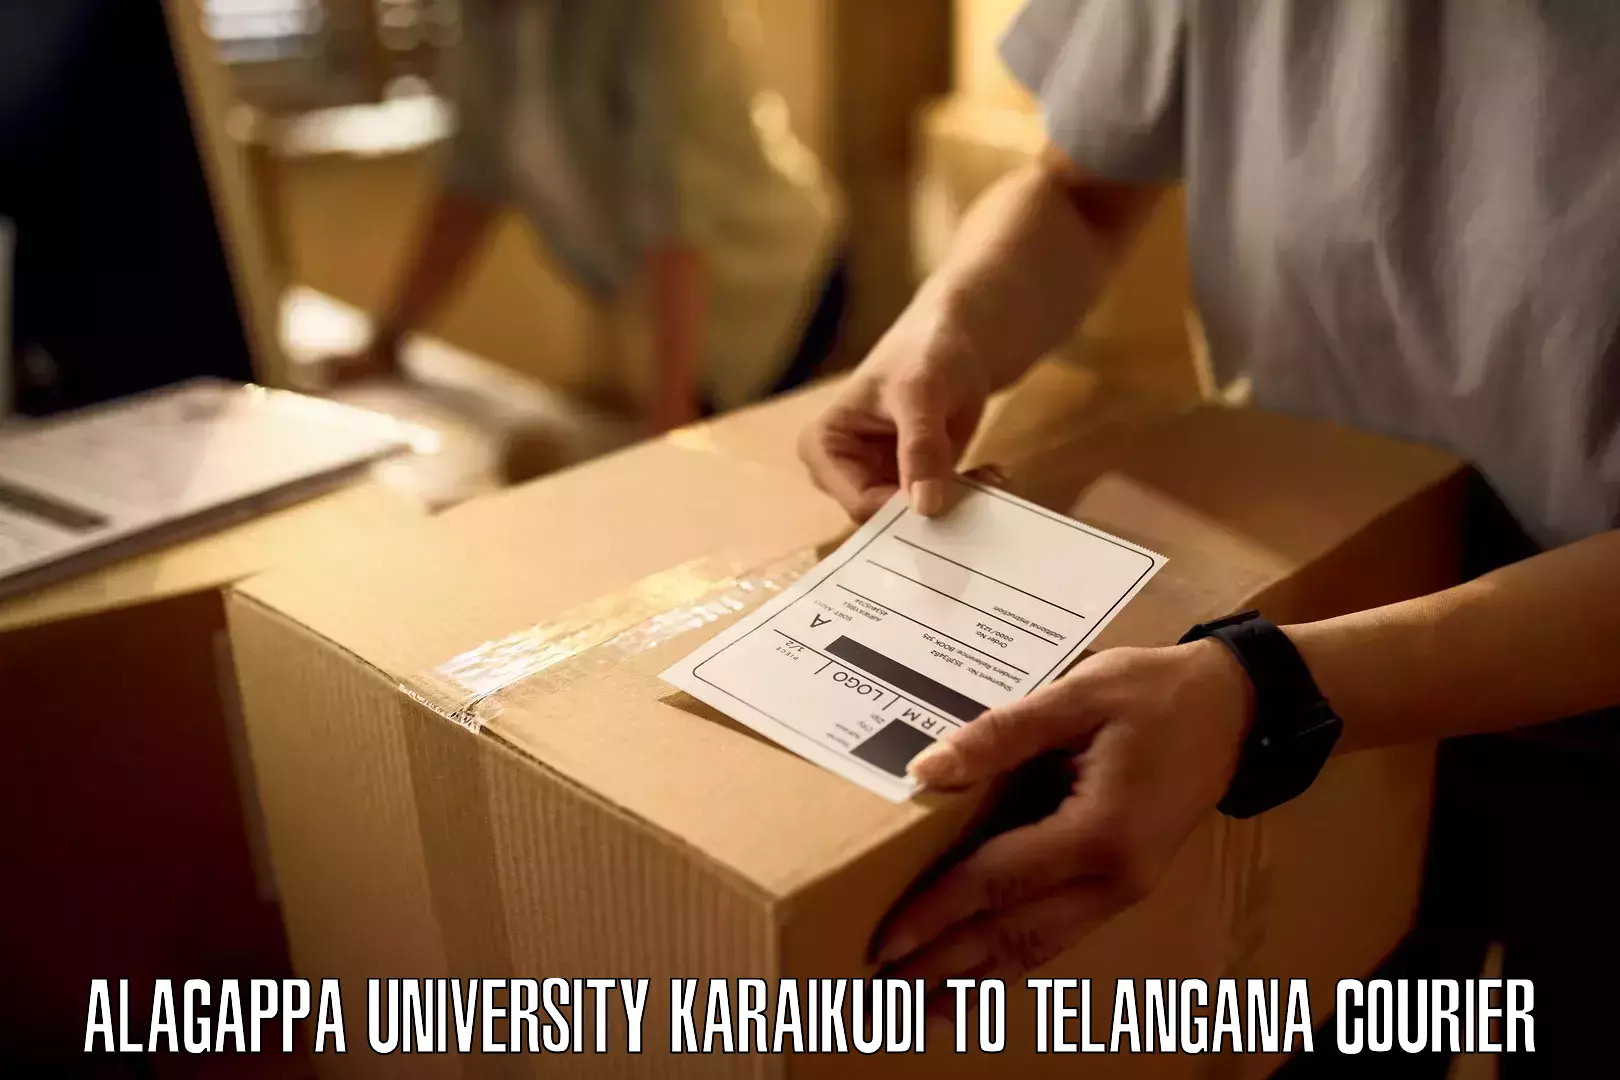 Optimized delivery routes Alagappa University Karaikudi to Kacheguda